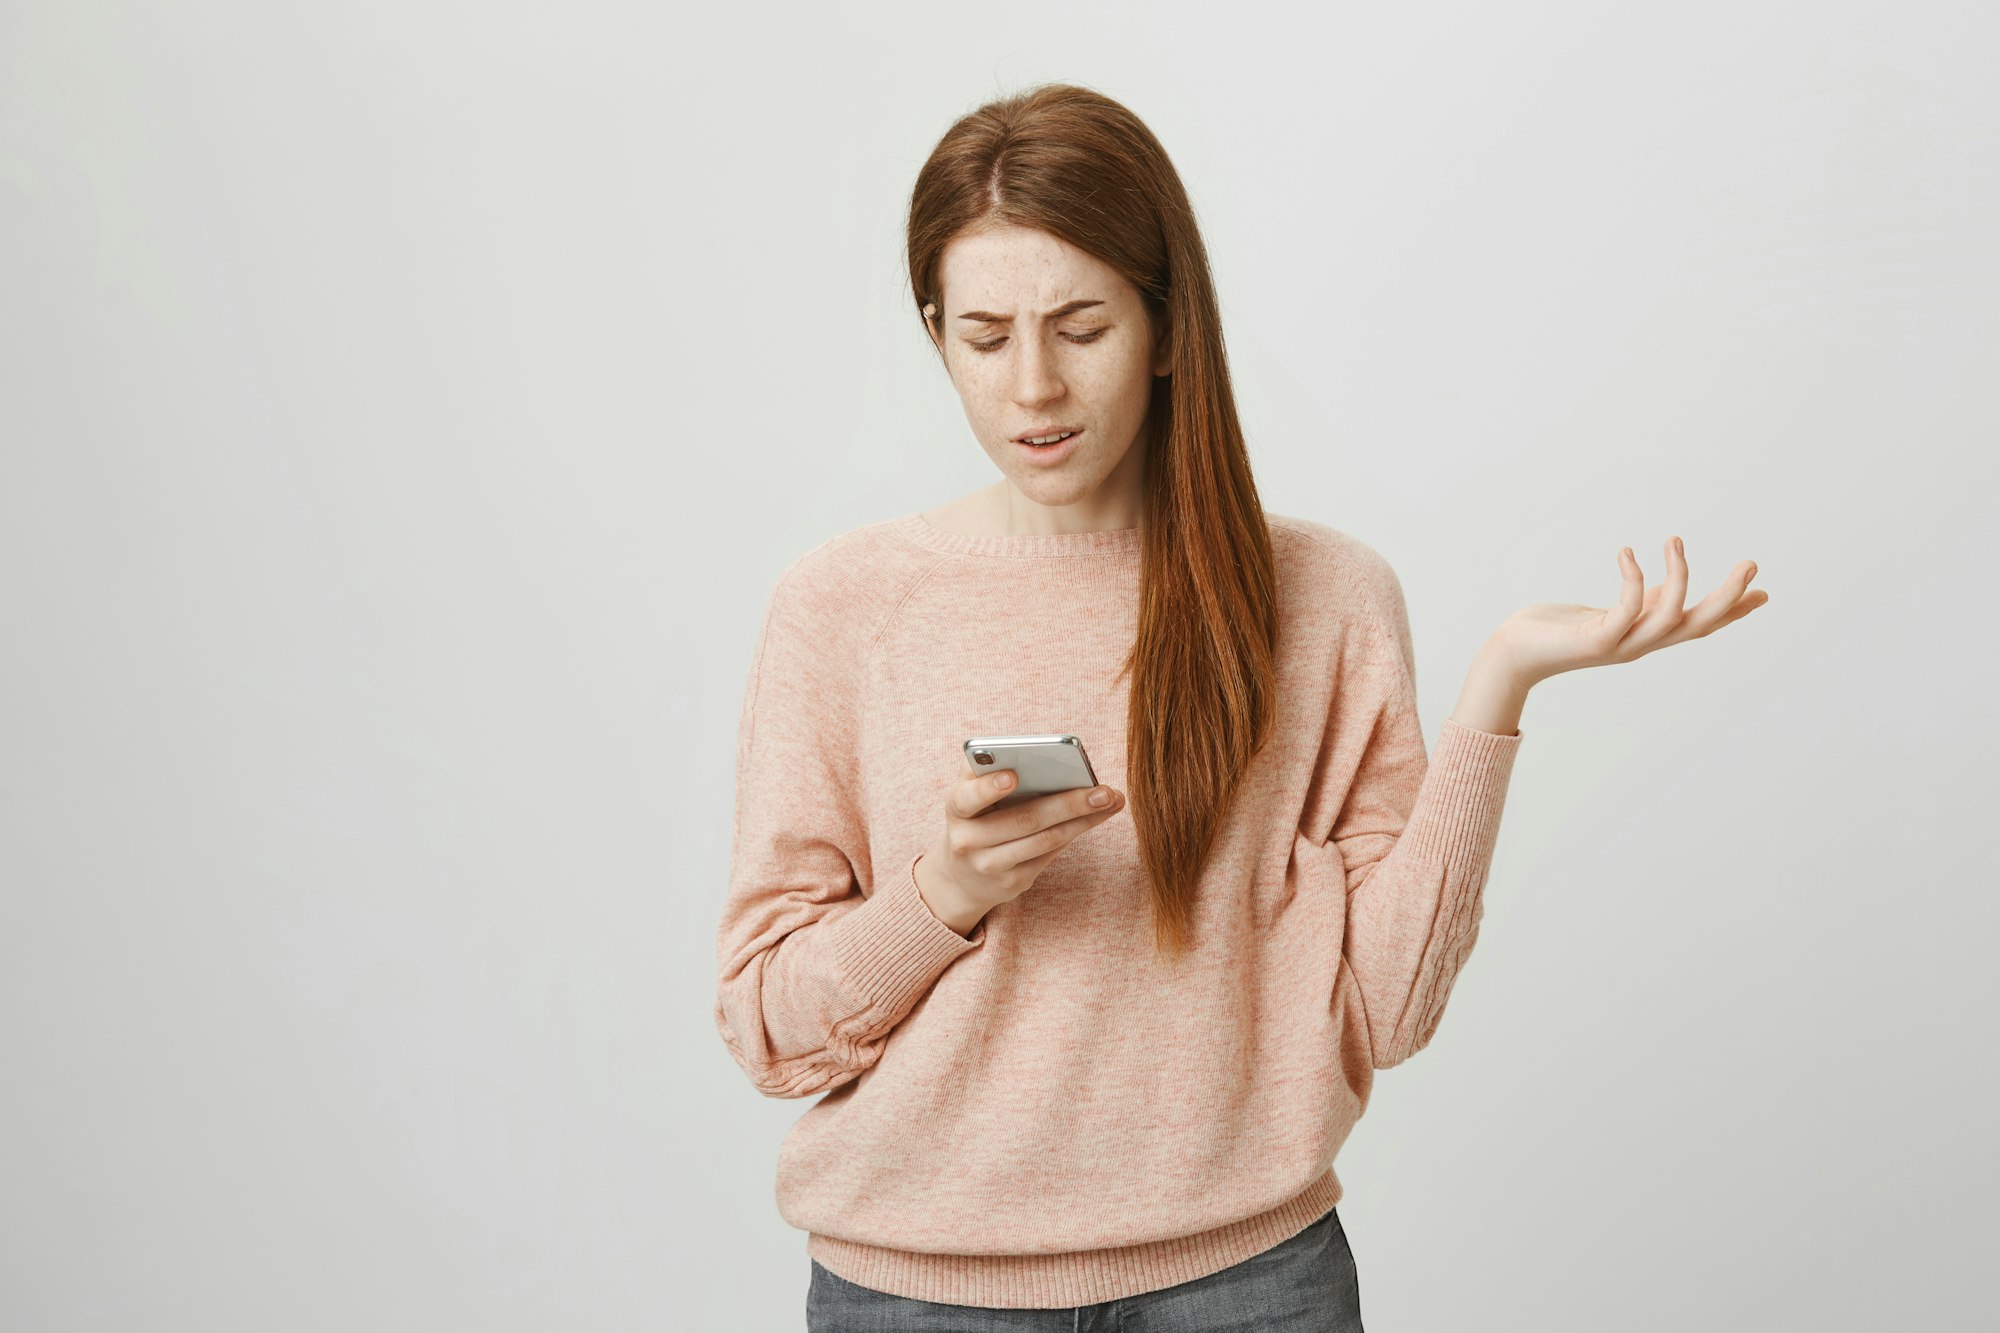 Une jeune fille rousse inquiète ou irritée gesticule en regardant l'écran d'un smartphone.